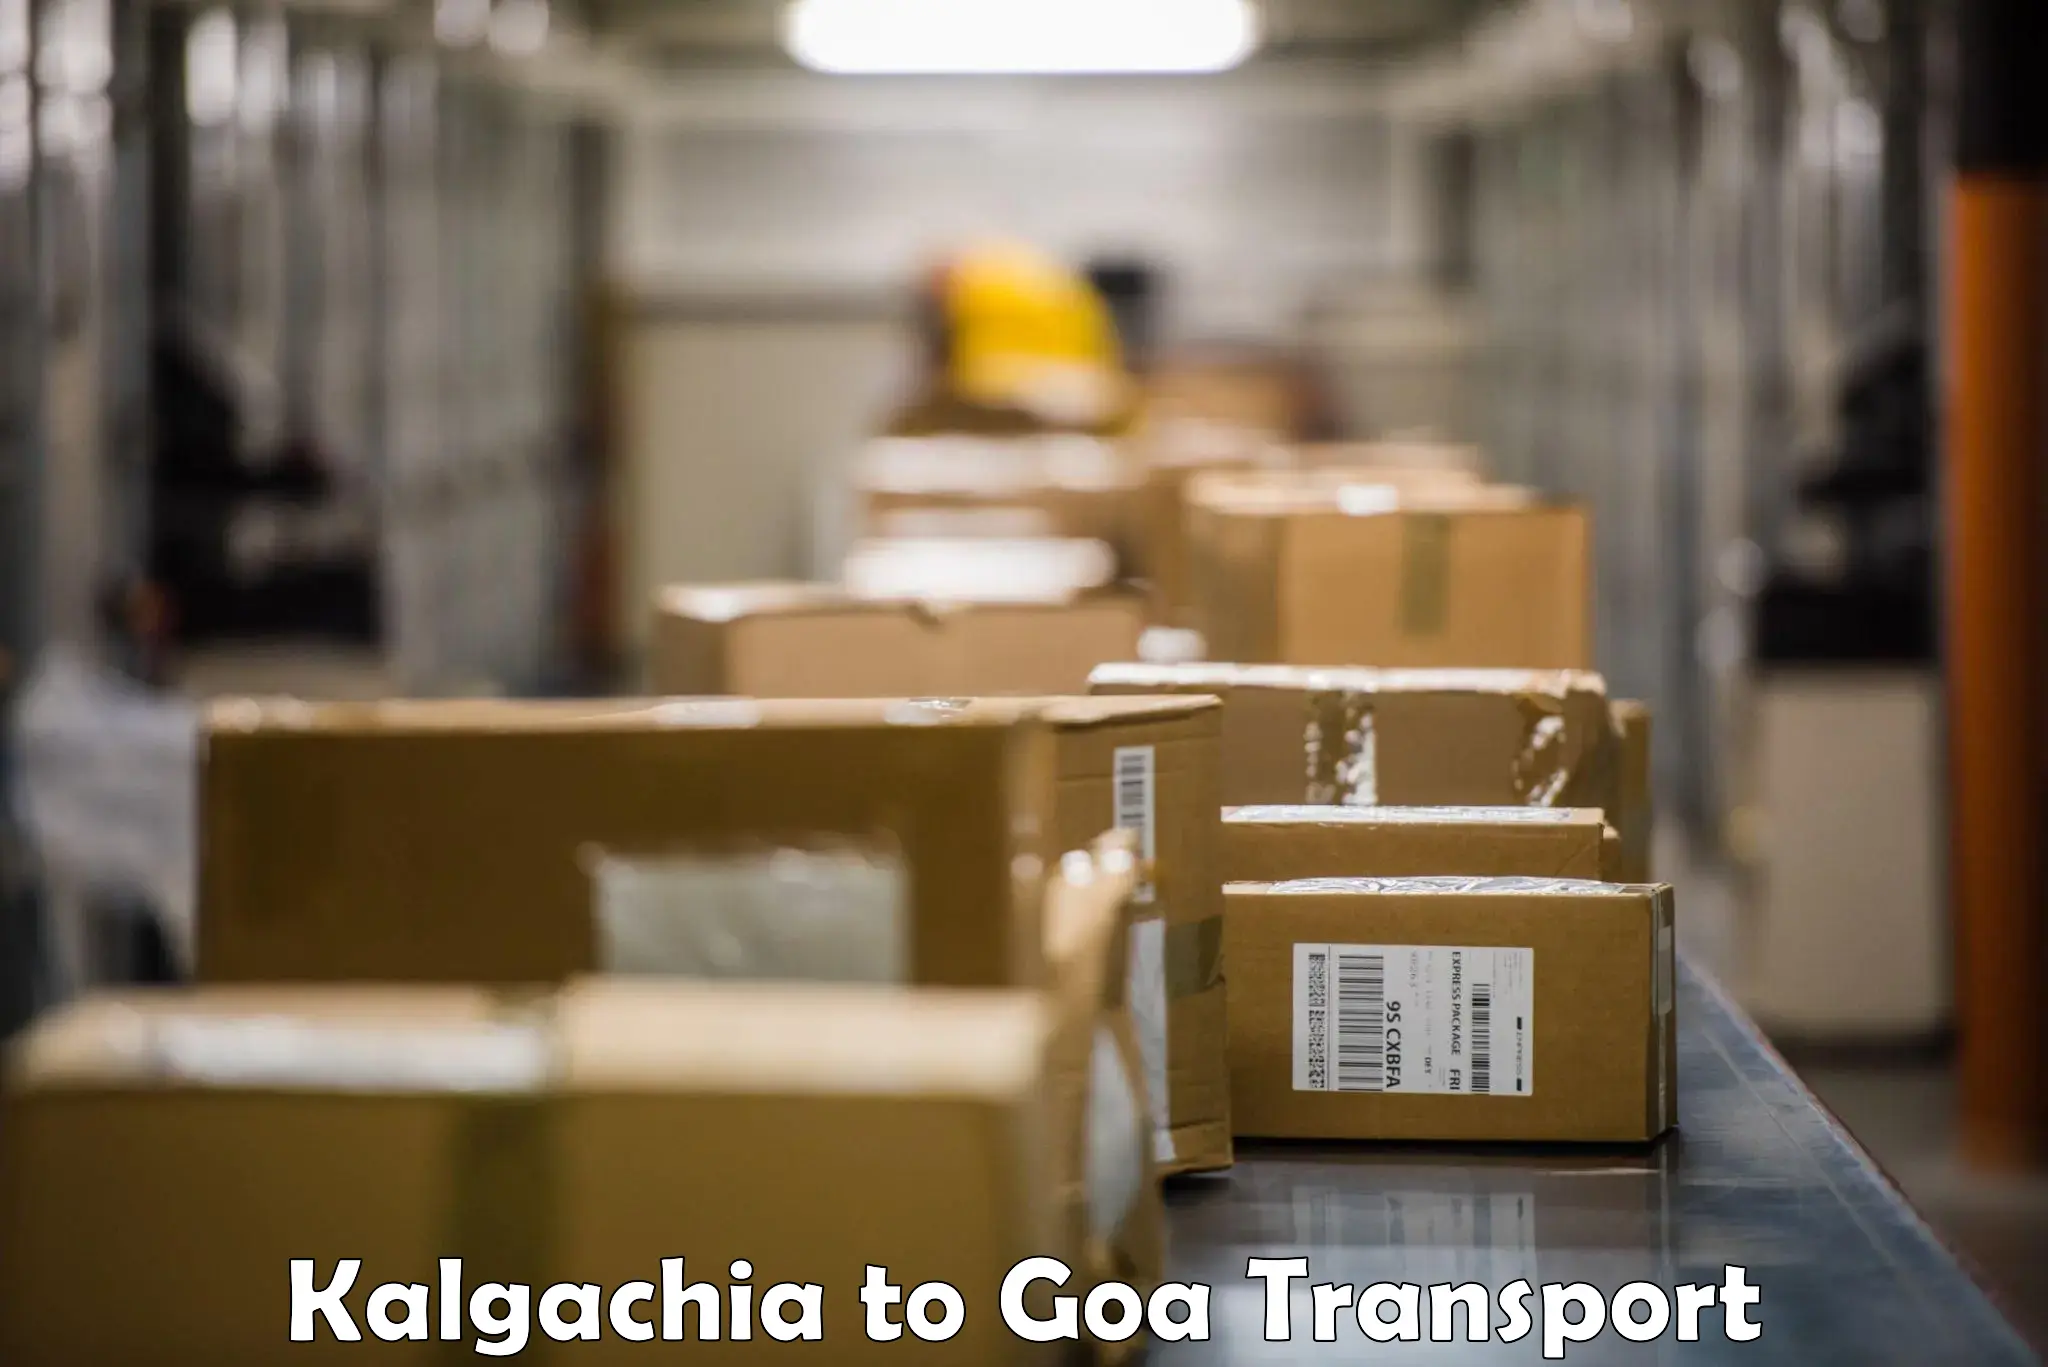 Land transport services in Kalgachia to Panjim